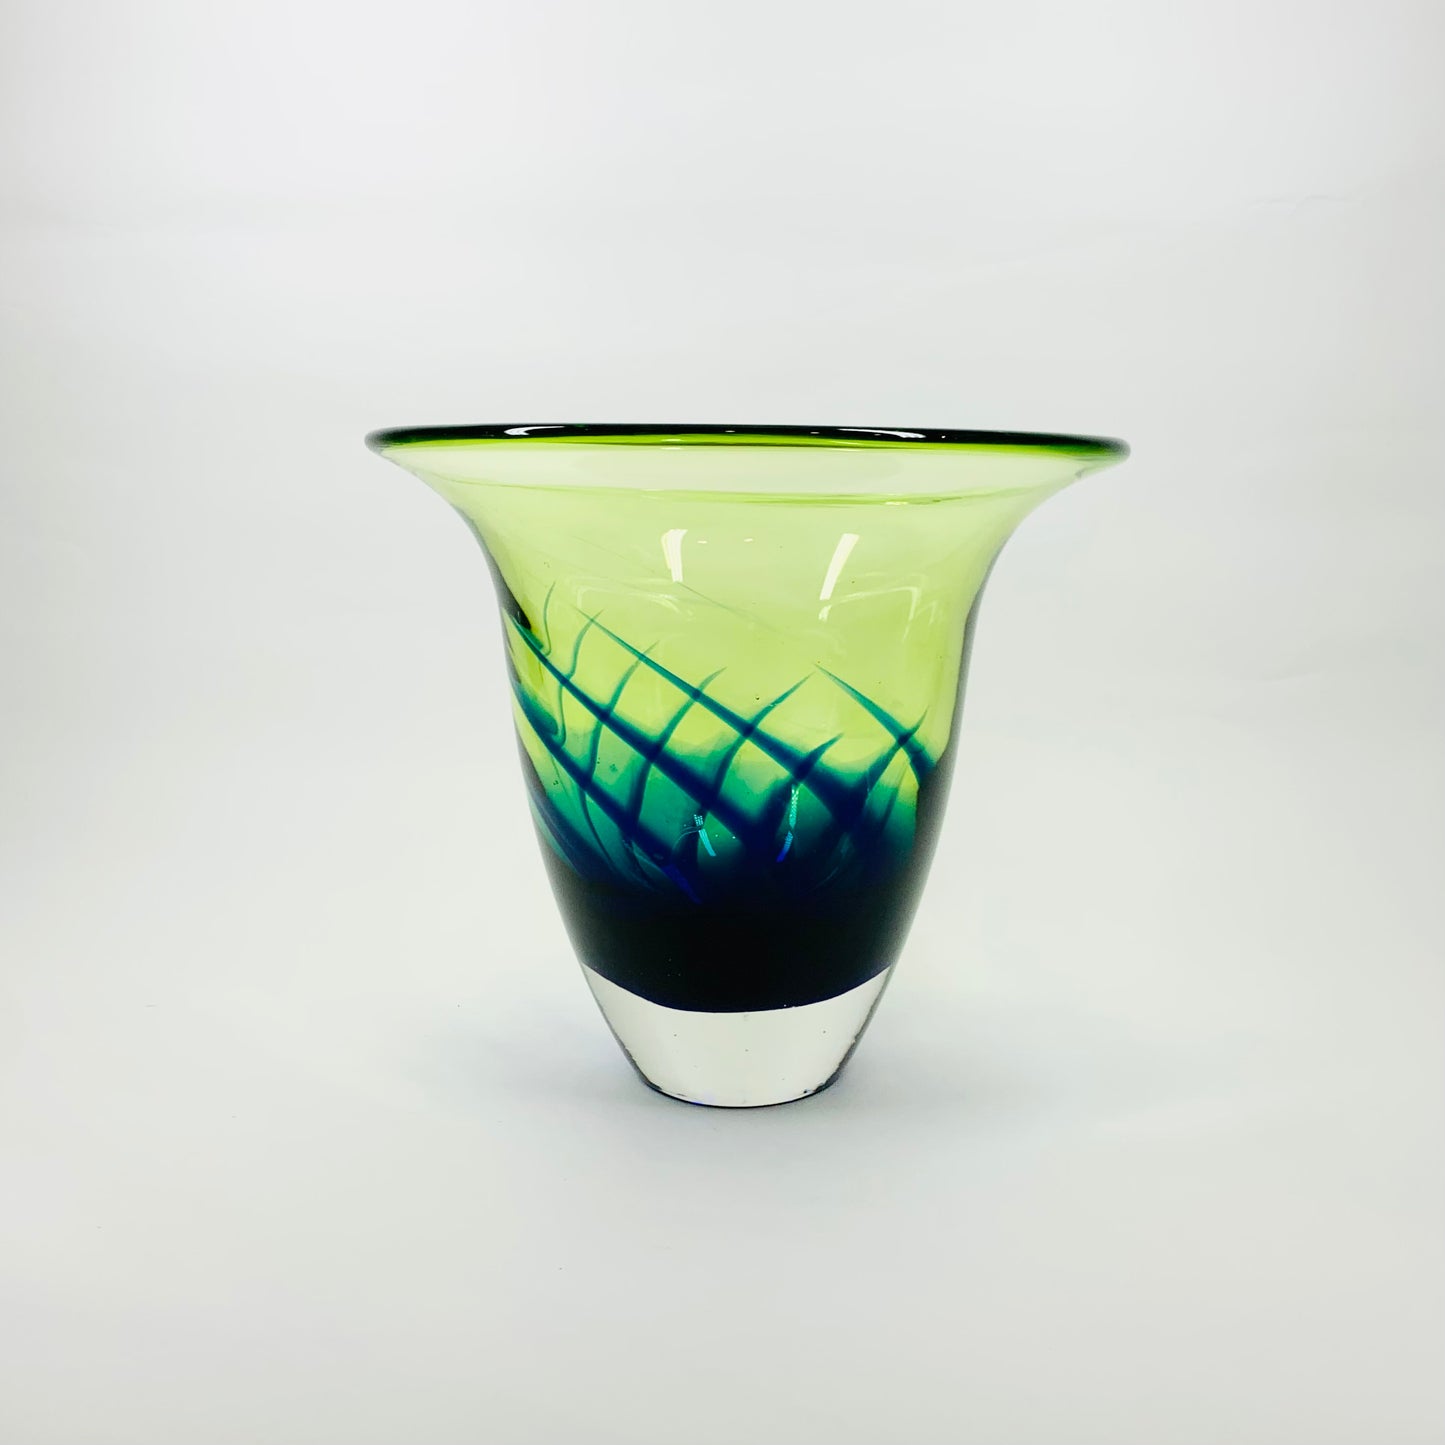 GREEN ART GLASS VASE